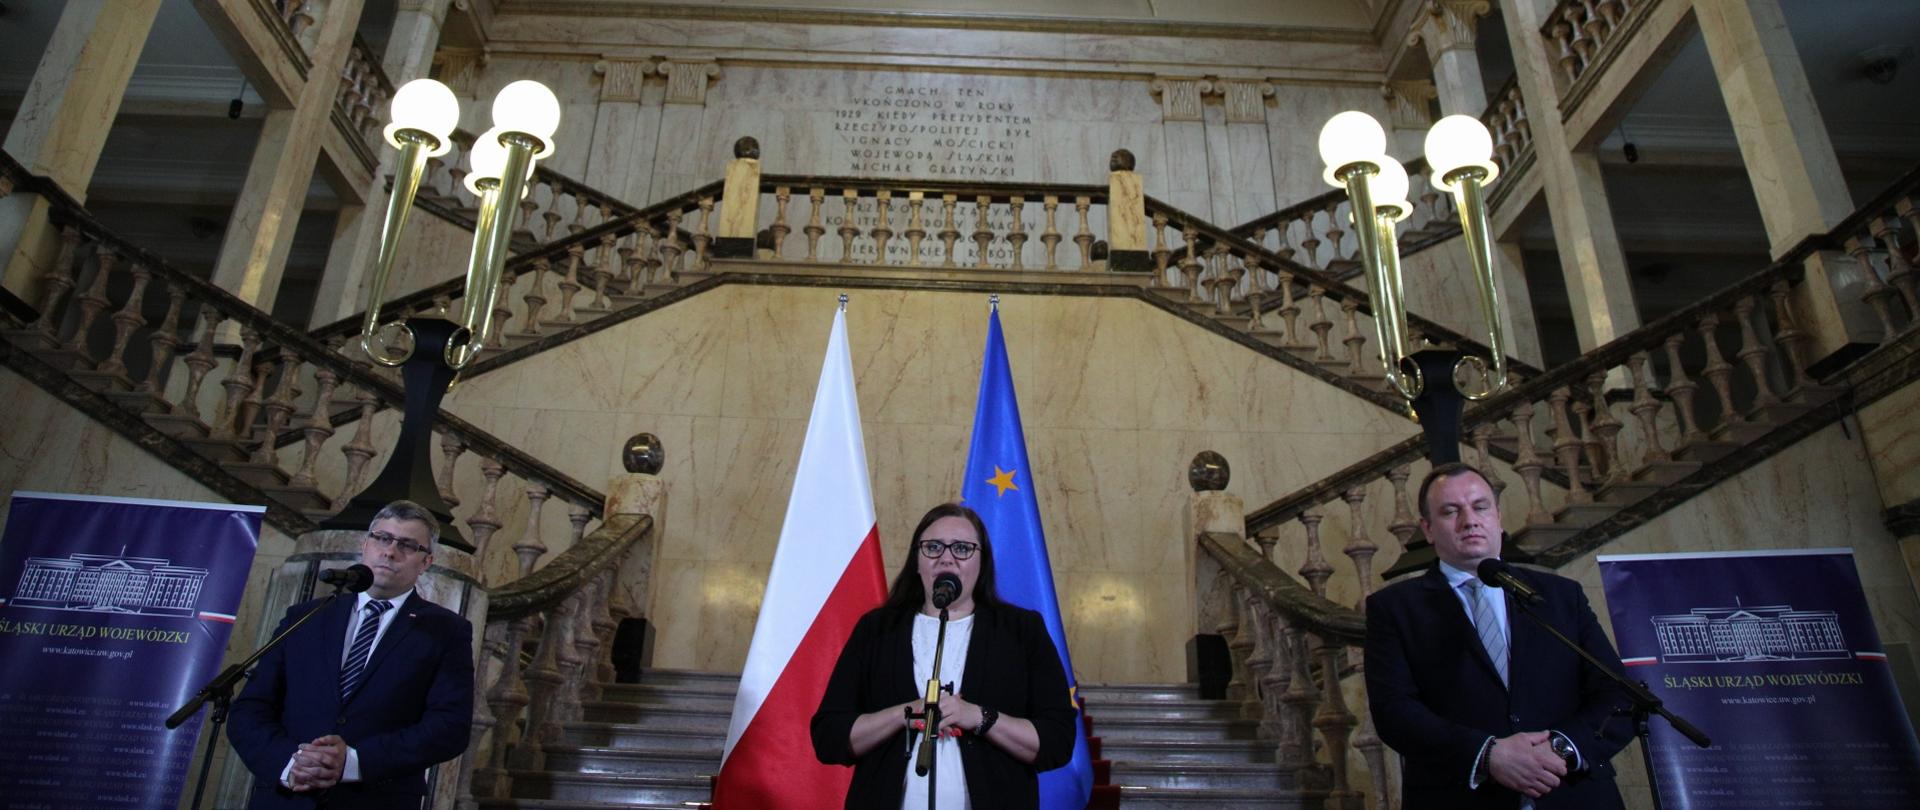 W urzędzie na schodach stoją trzy osoby - dwóch mężczyzn i w środku minister Małgorzata Jarosińska-Jedynak